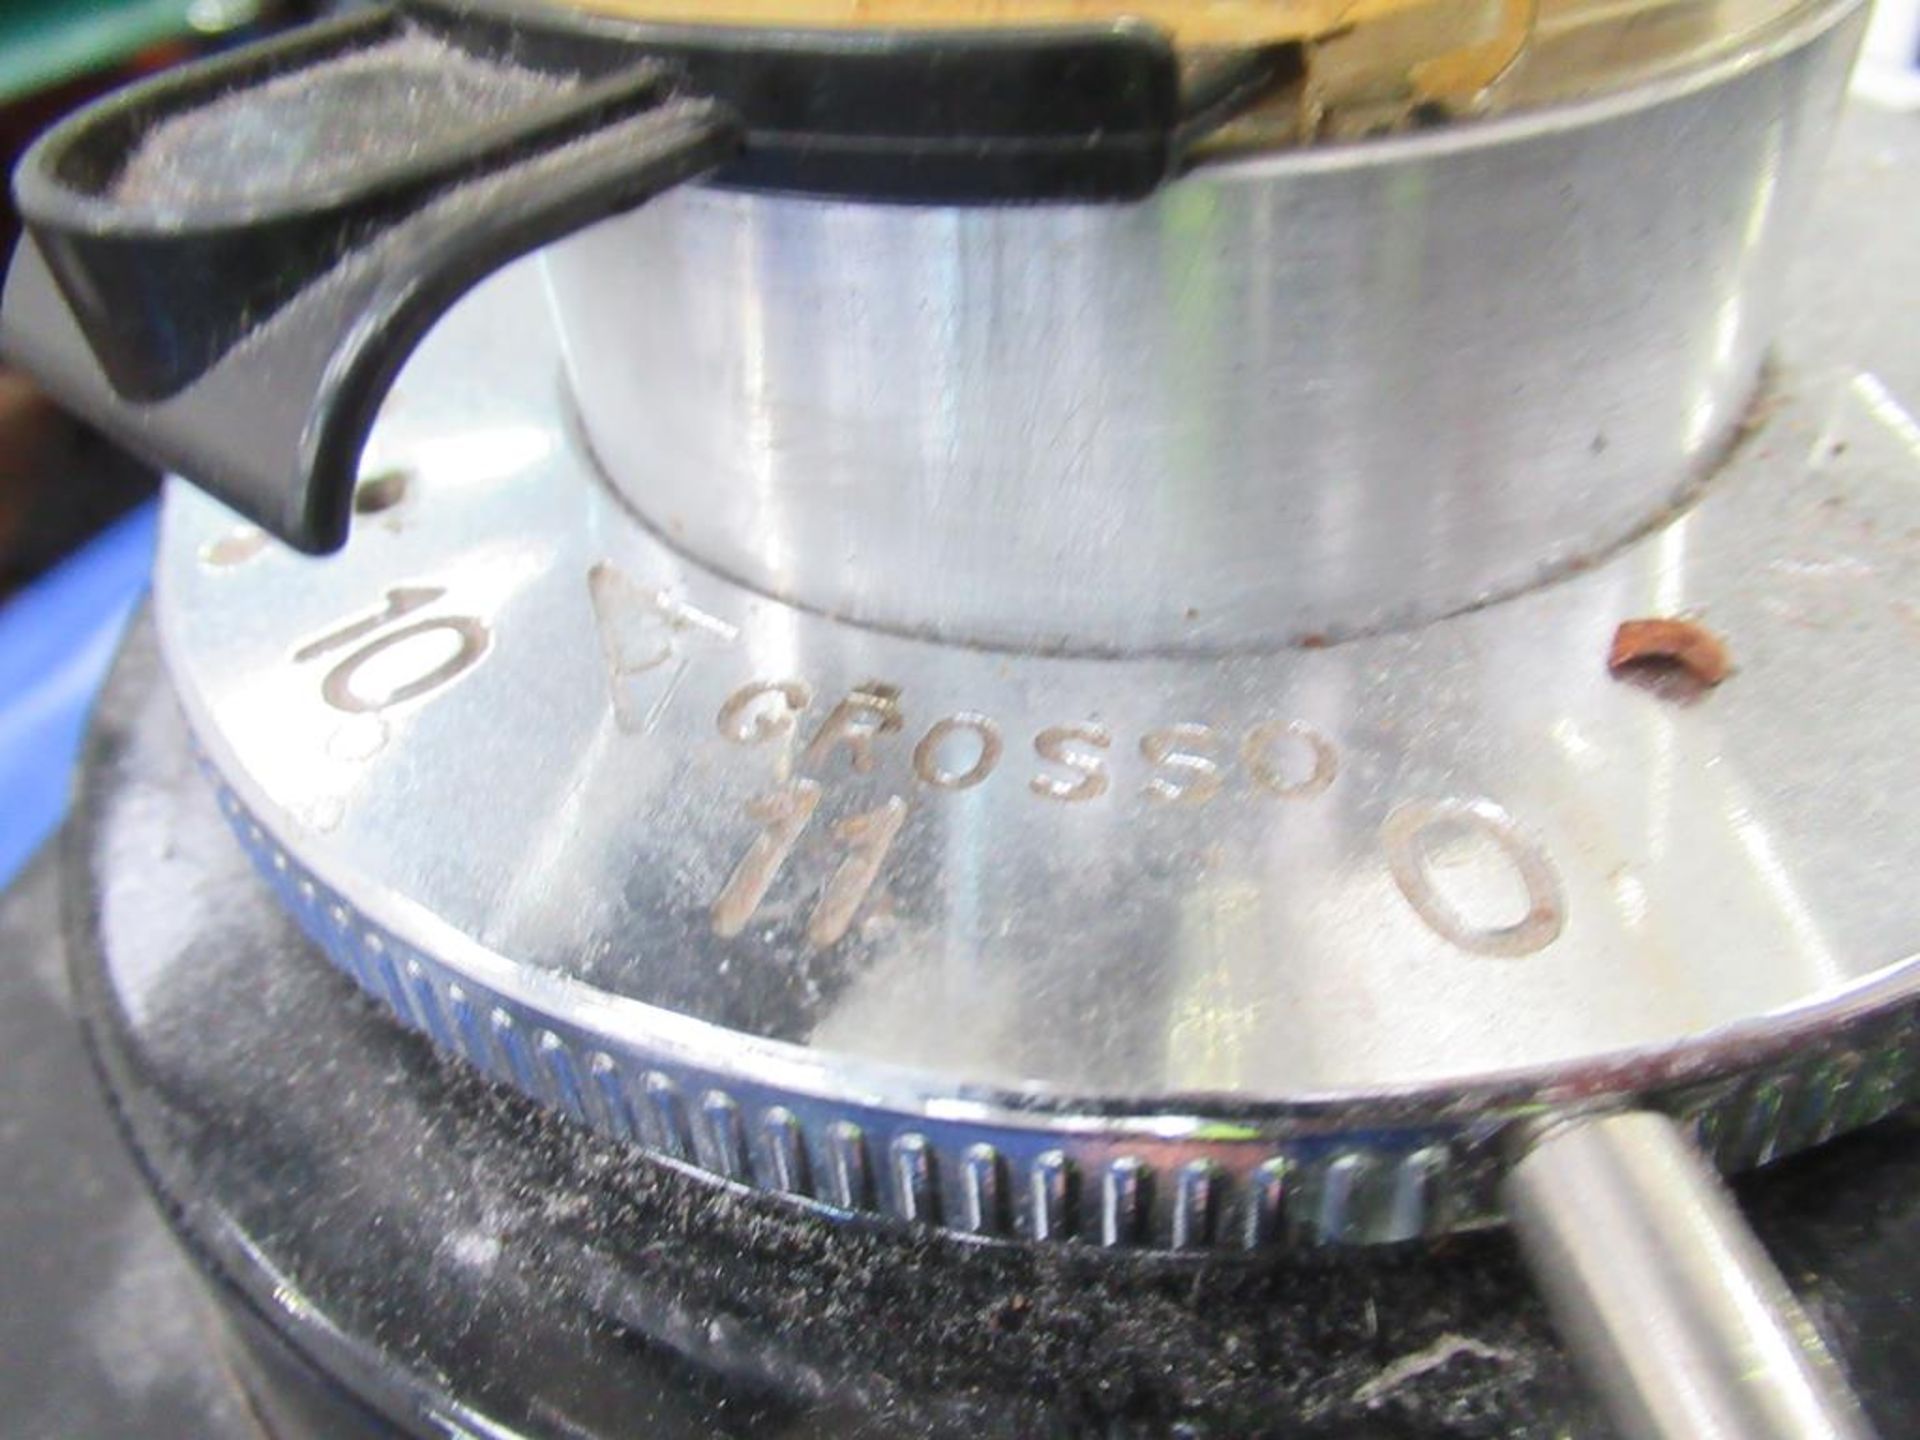 Sanremo SR70 Evo coffee grinder - Image 3 of 13